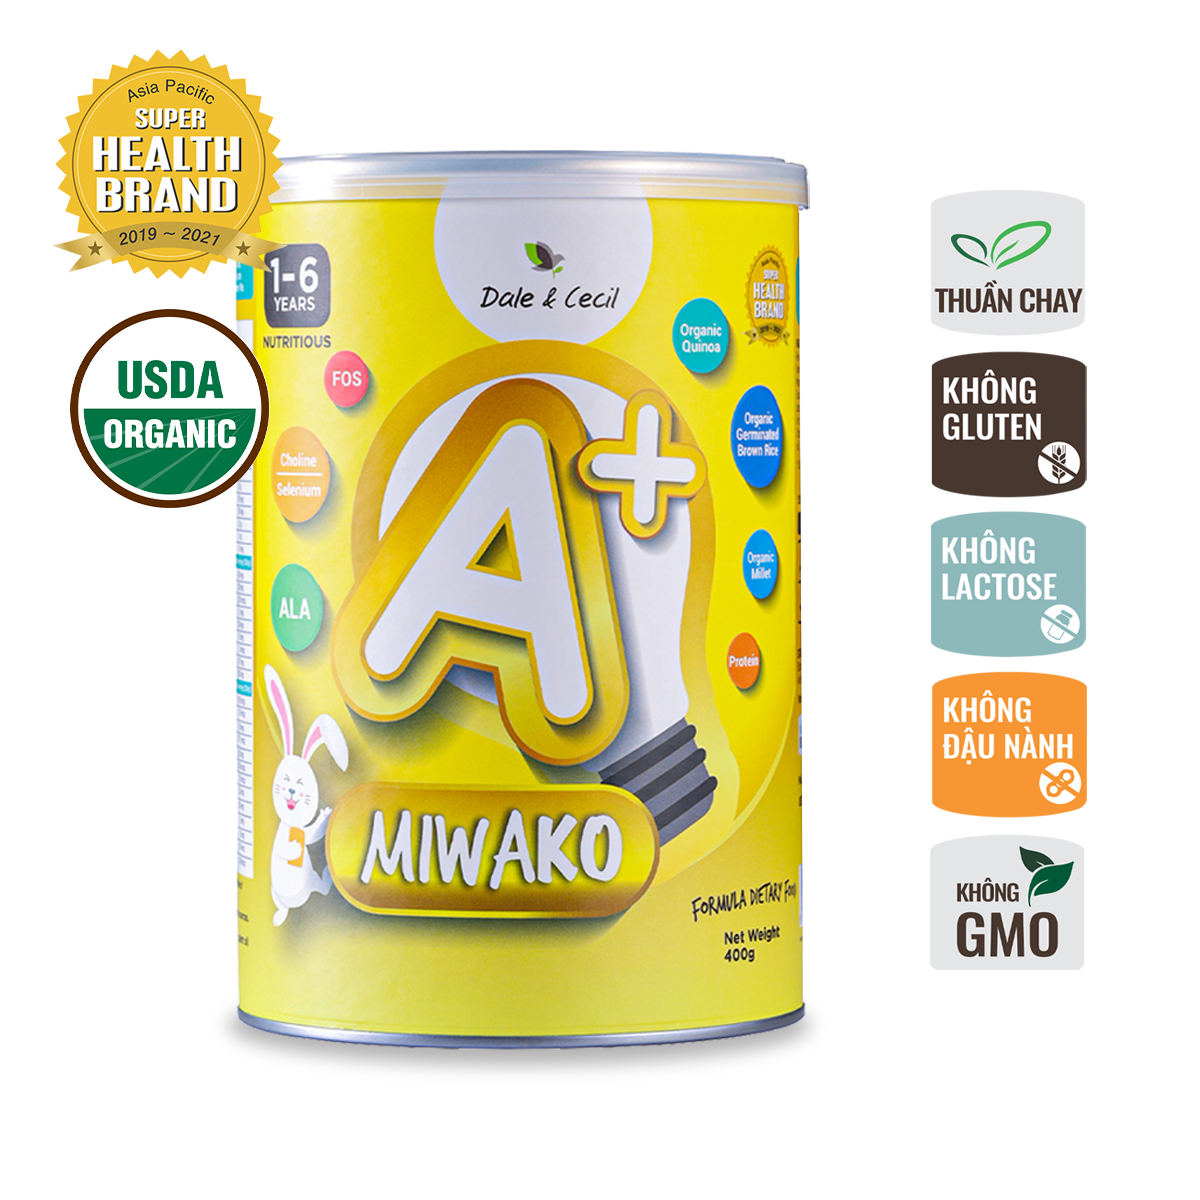 Sữa Miwako A+ Hộp 400g Vị Vani Nhập Khẩu Malaysia, Sữa Hạt Hữu Cơ Organic Cho Bé Từ 1-6 Tuổi Giúp Cải Thiện Ngôn Ngữ Phát Triển Trí Não &amp; Chiều Cao Vị Ngọt Tự Nhiên Dễ Uống